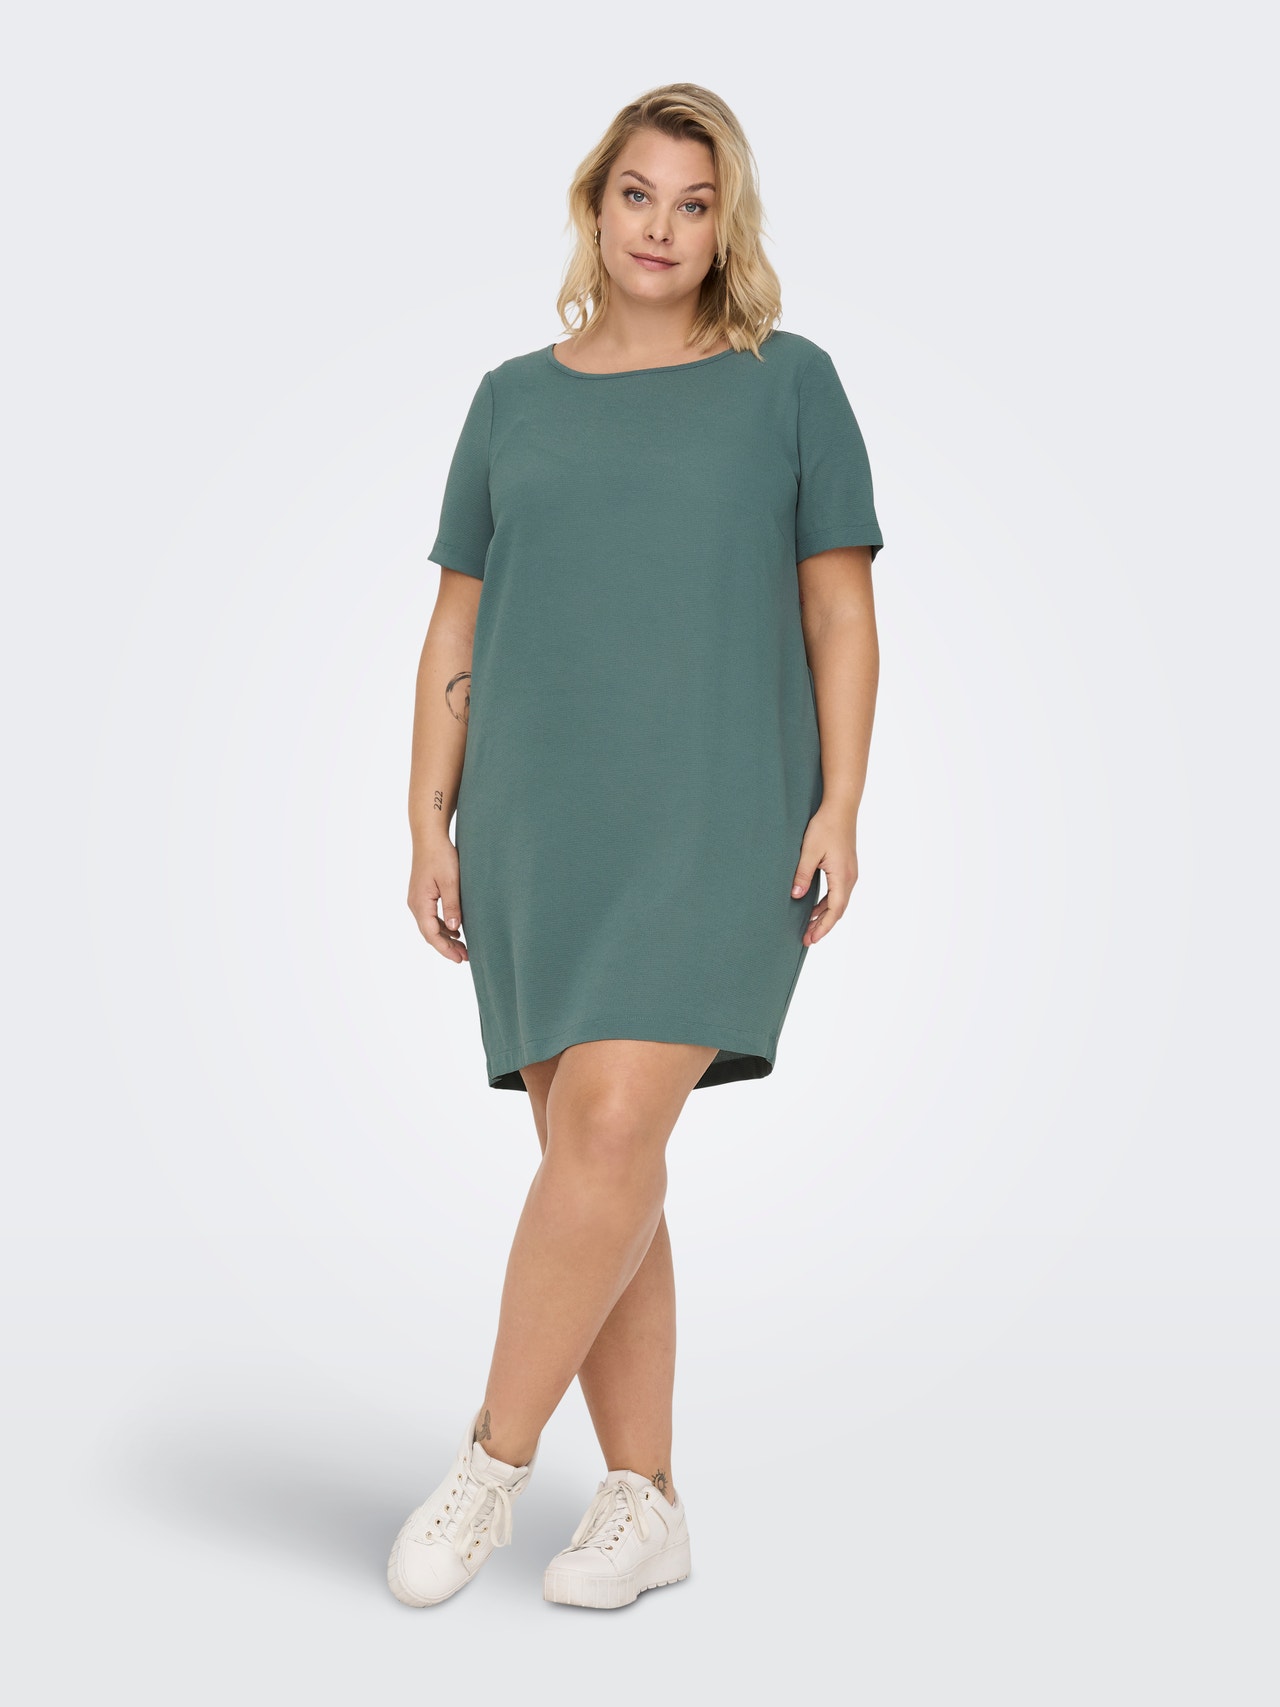 ONLY Regular fit U-Hals Korte jurk -Balsam Green - 15299253